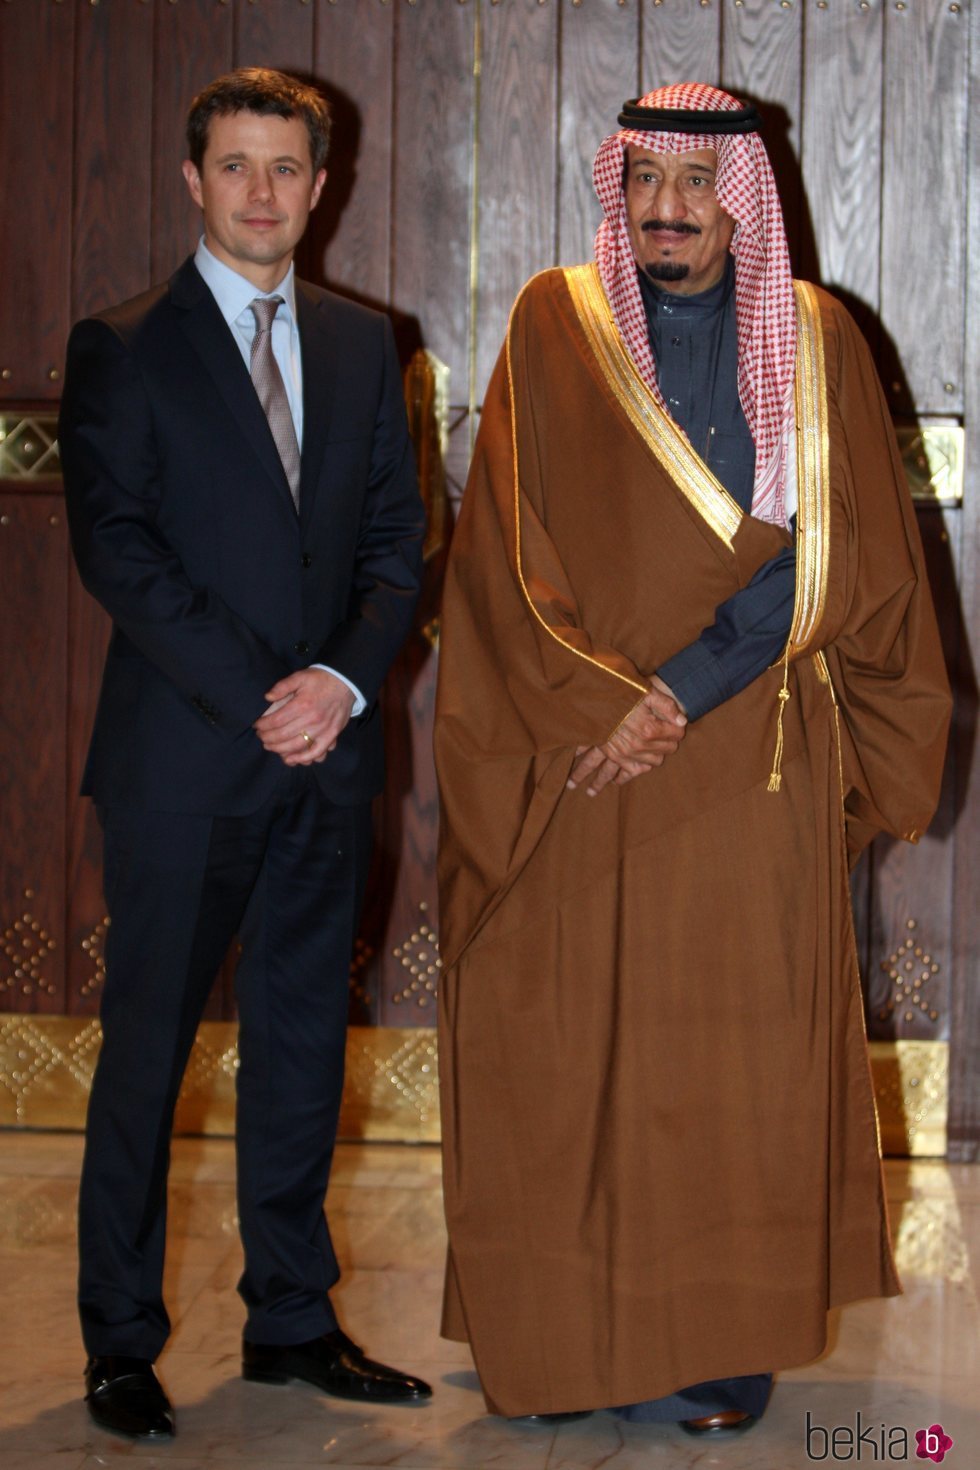 El Príncipe Salmán bin Abdelaziz Al Saud junto al Príncipe Federico de Dinamarca en 2010